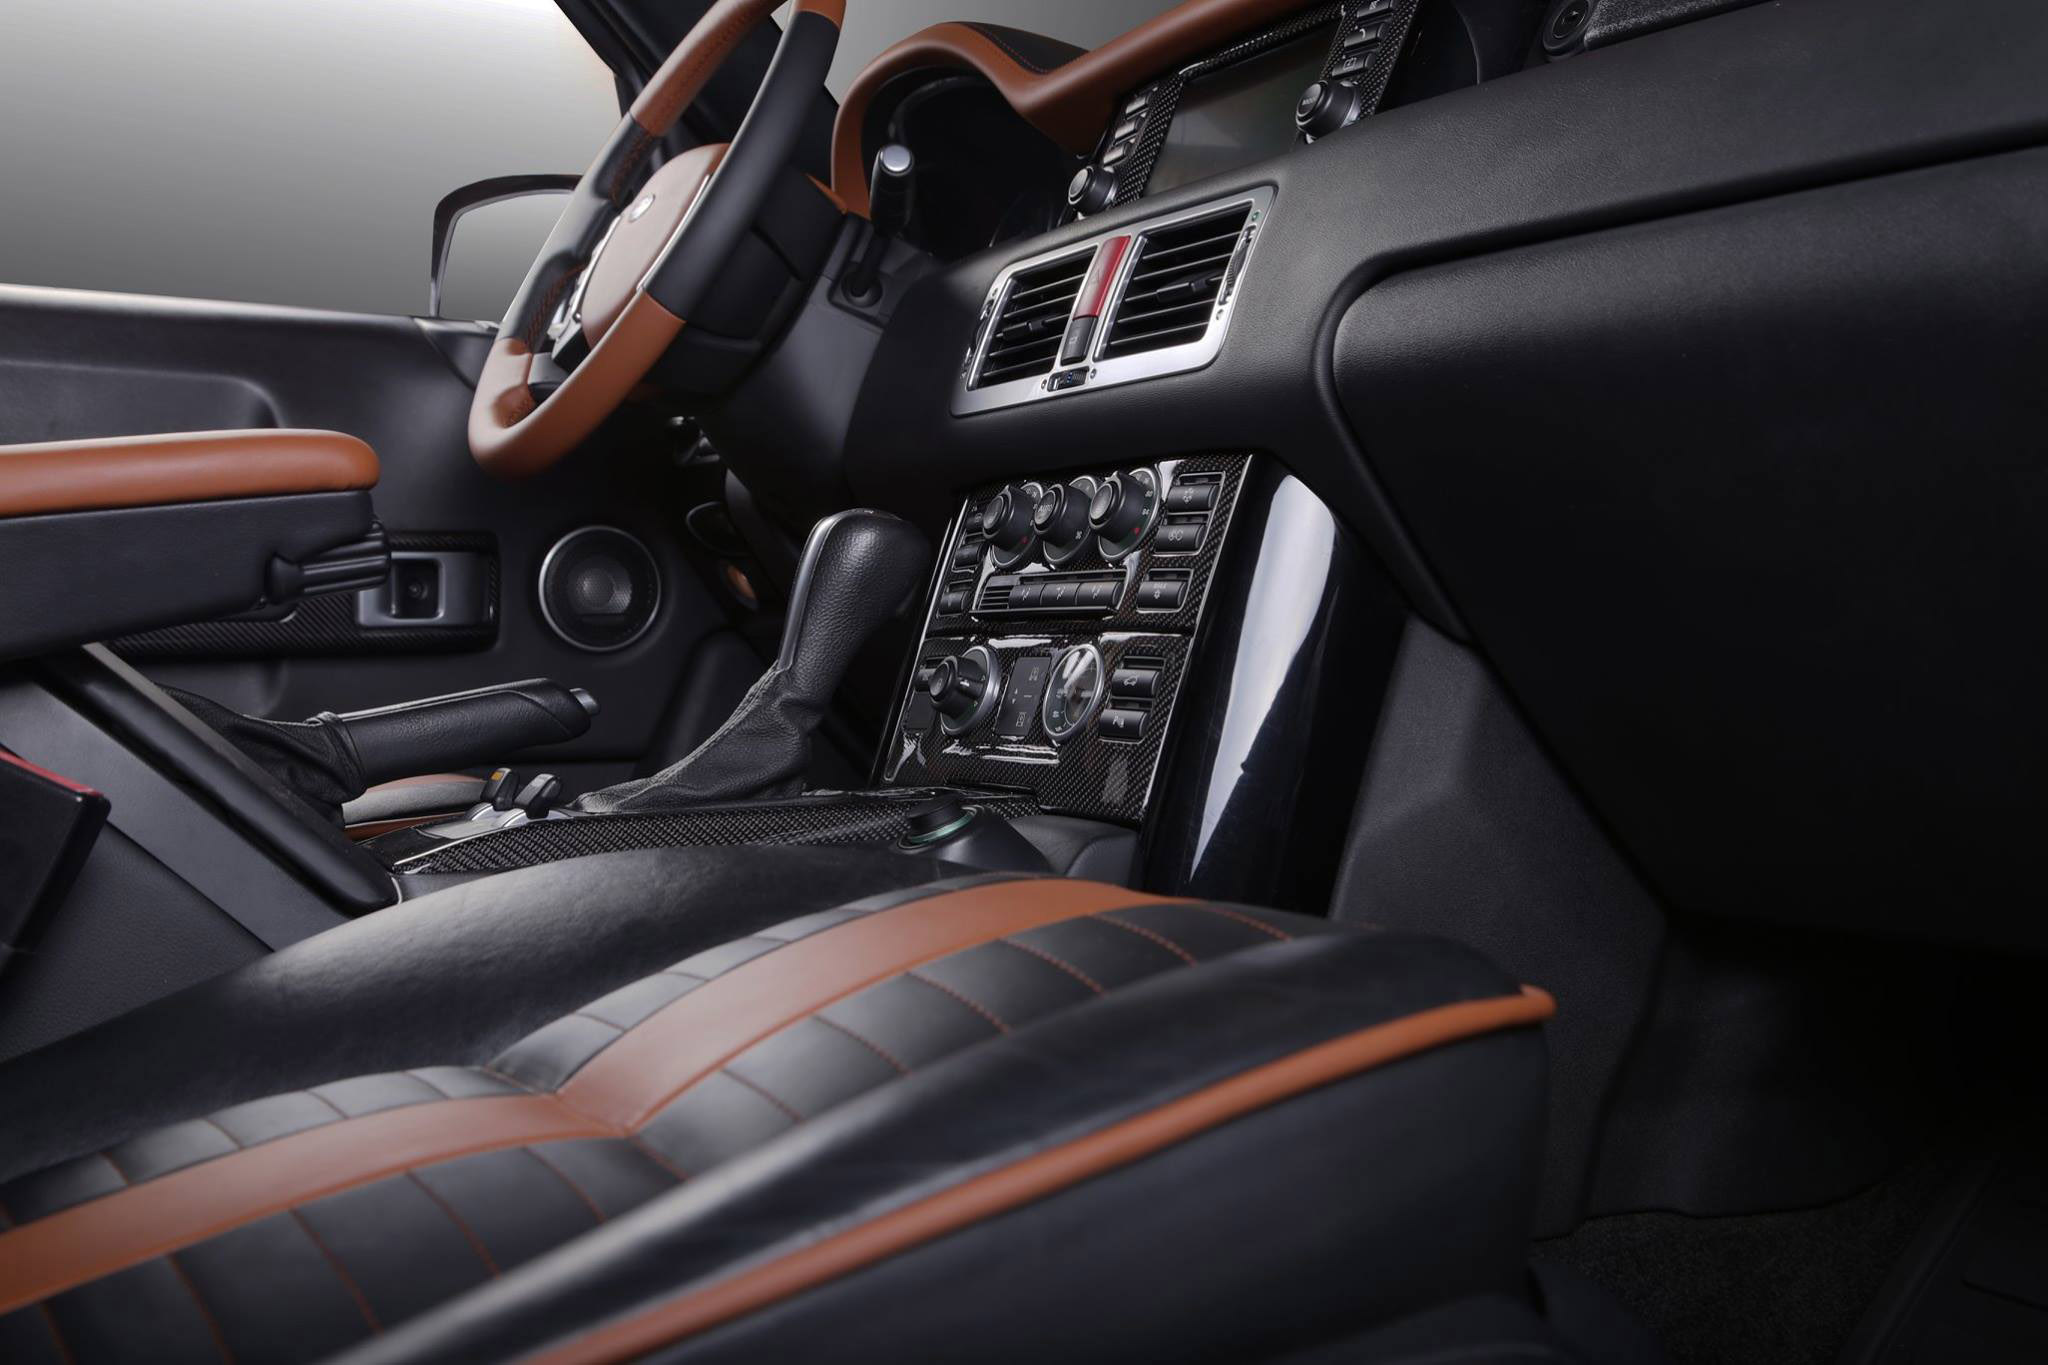 Carbon Motors Range Rover Onyx Concept